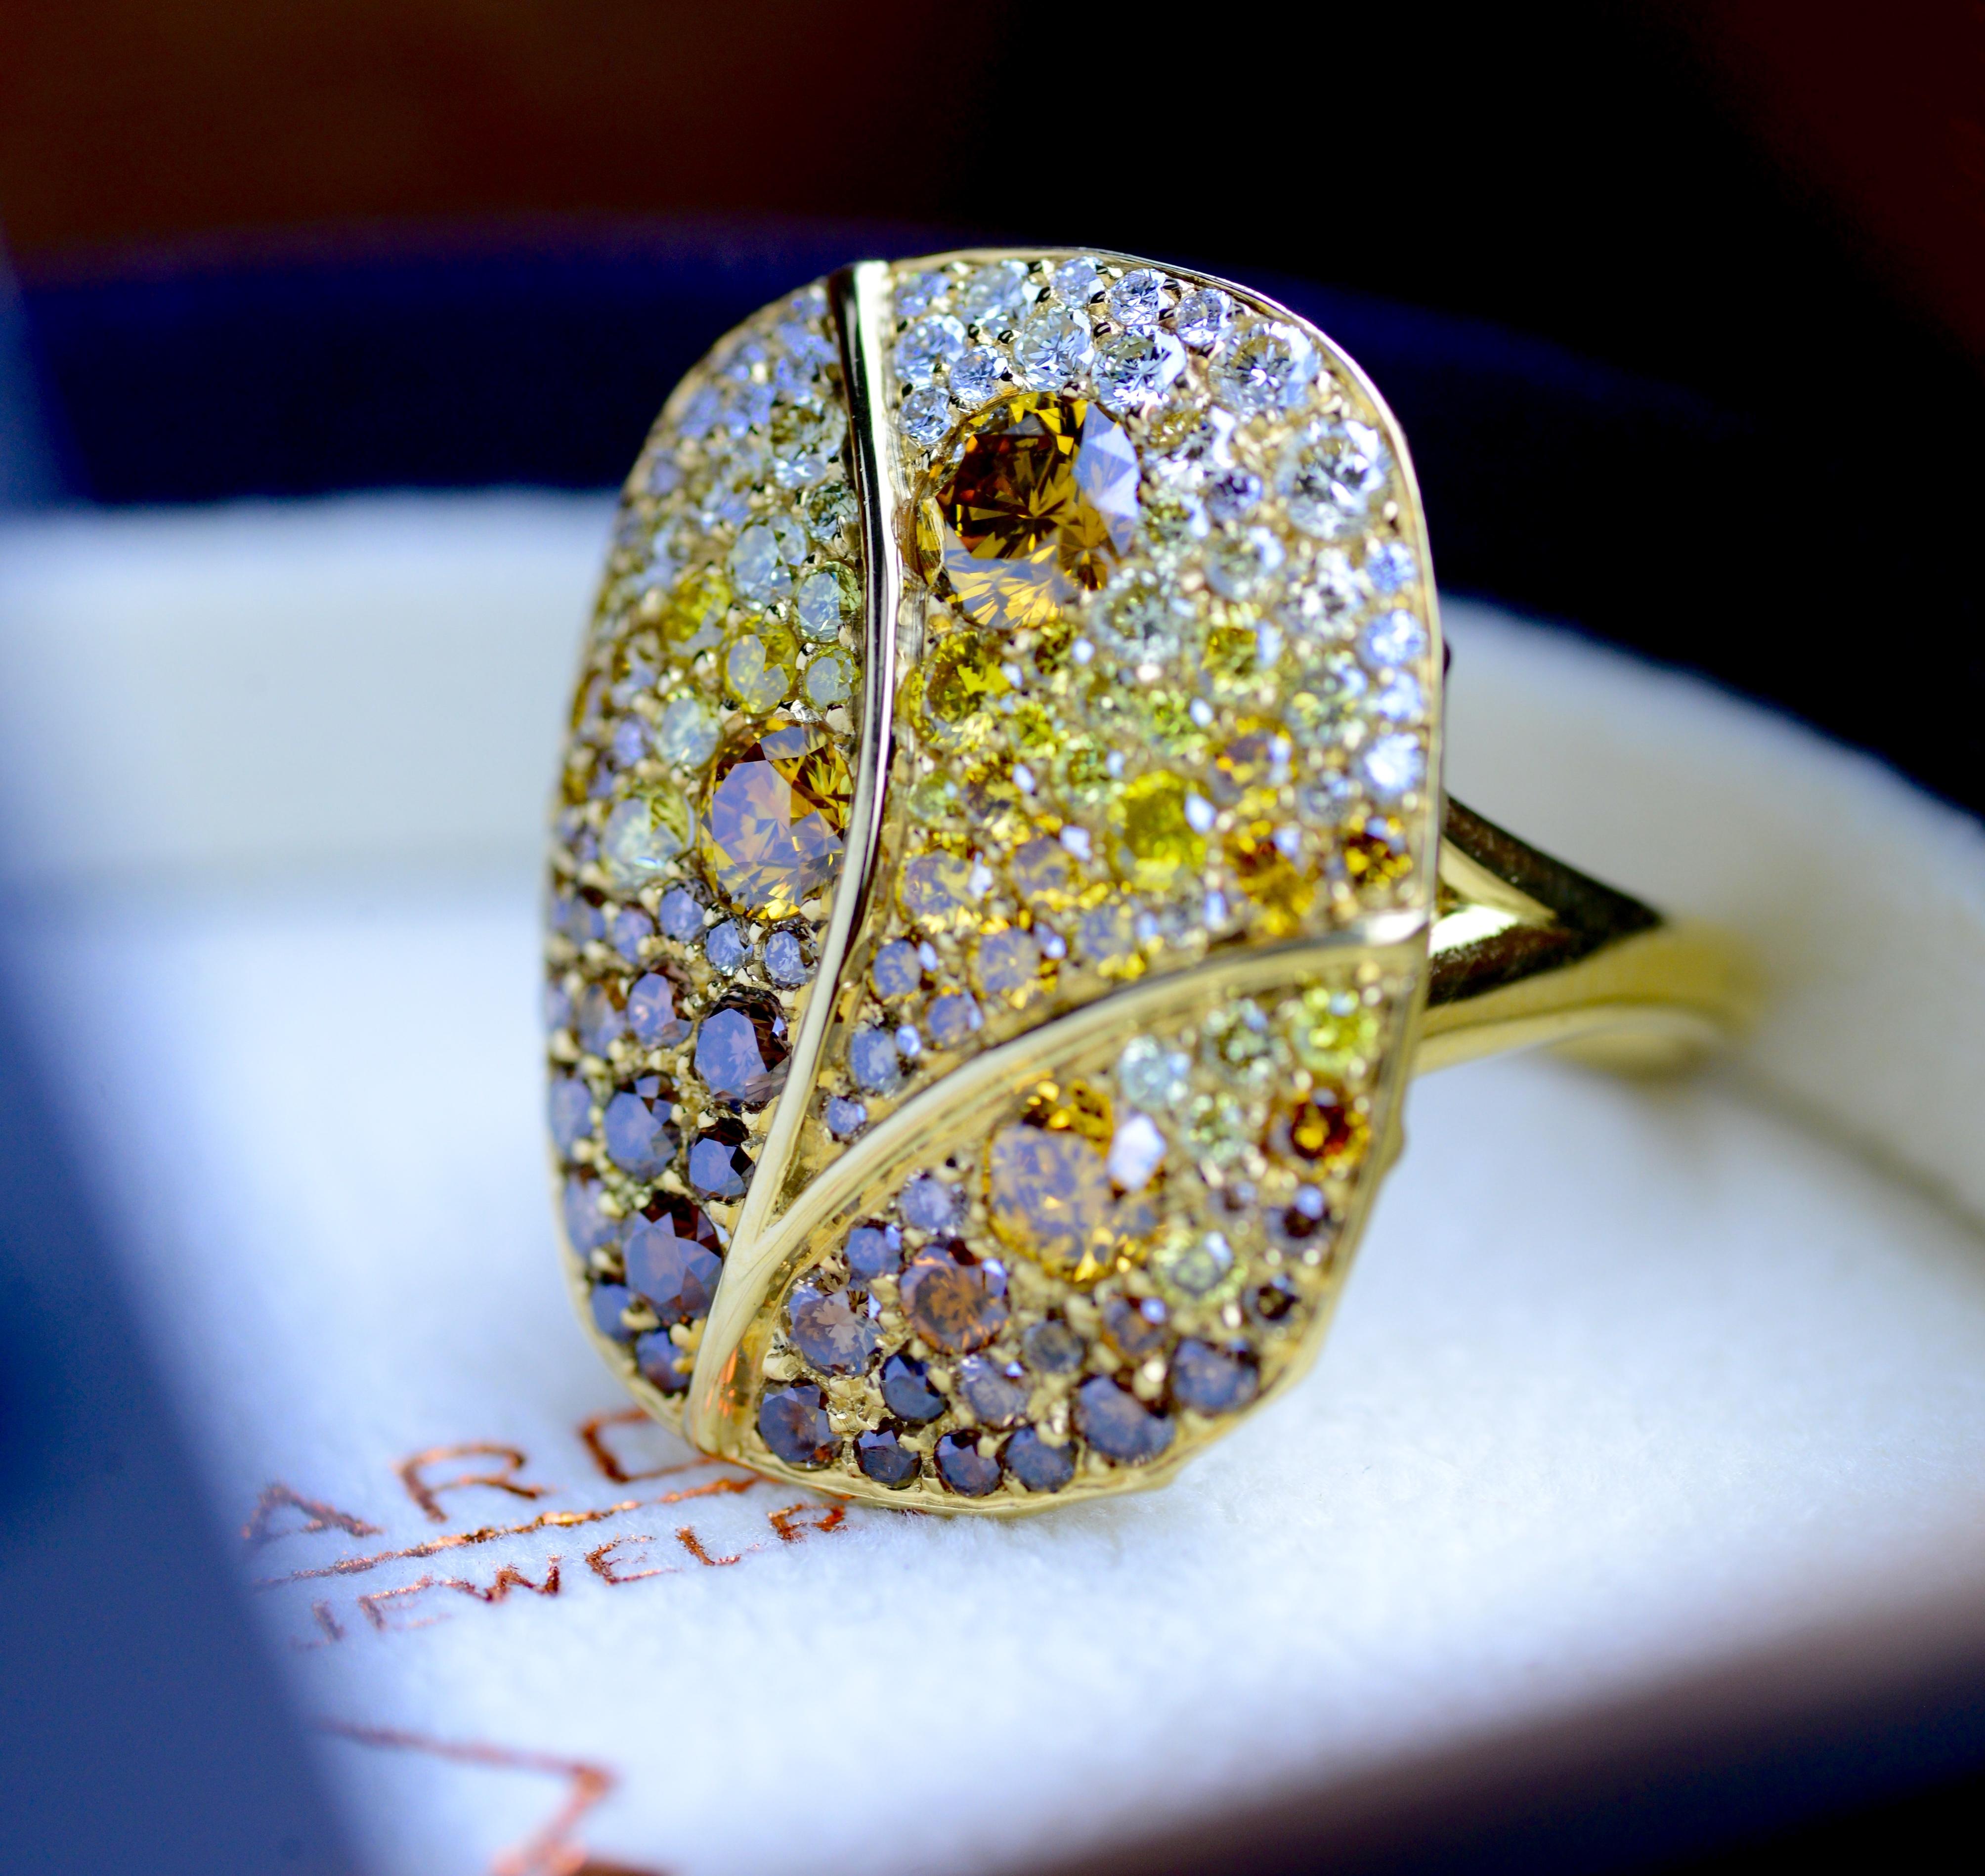 Blattmotiv-Diamantring mit abgestuften braunen, orangefarbenen, gelben und weißen Fancy Colored VVS-SI1-Diamanten, insgesamt 3,80 Karat. Das Gesamtgewicht beträgt 9.1 Gramm. Die Fingergröße ist 6,5. Fassung aus 18K Gelbgold. 

Stolz hergestellt von